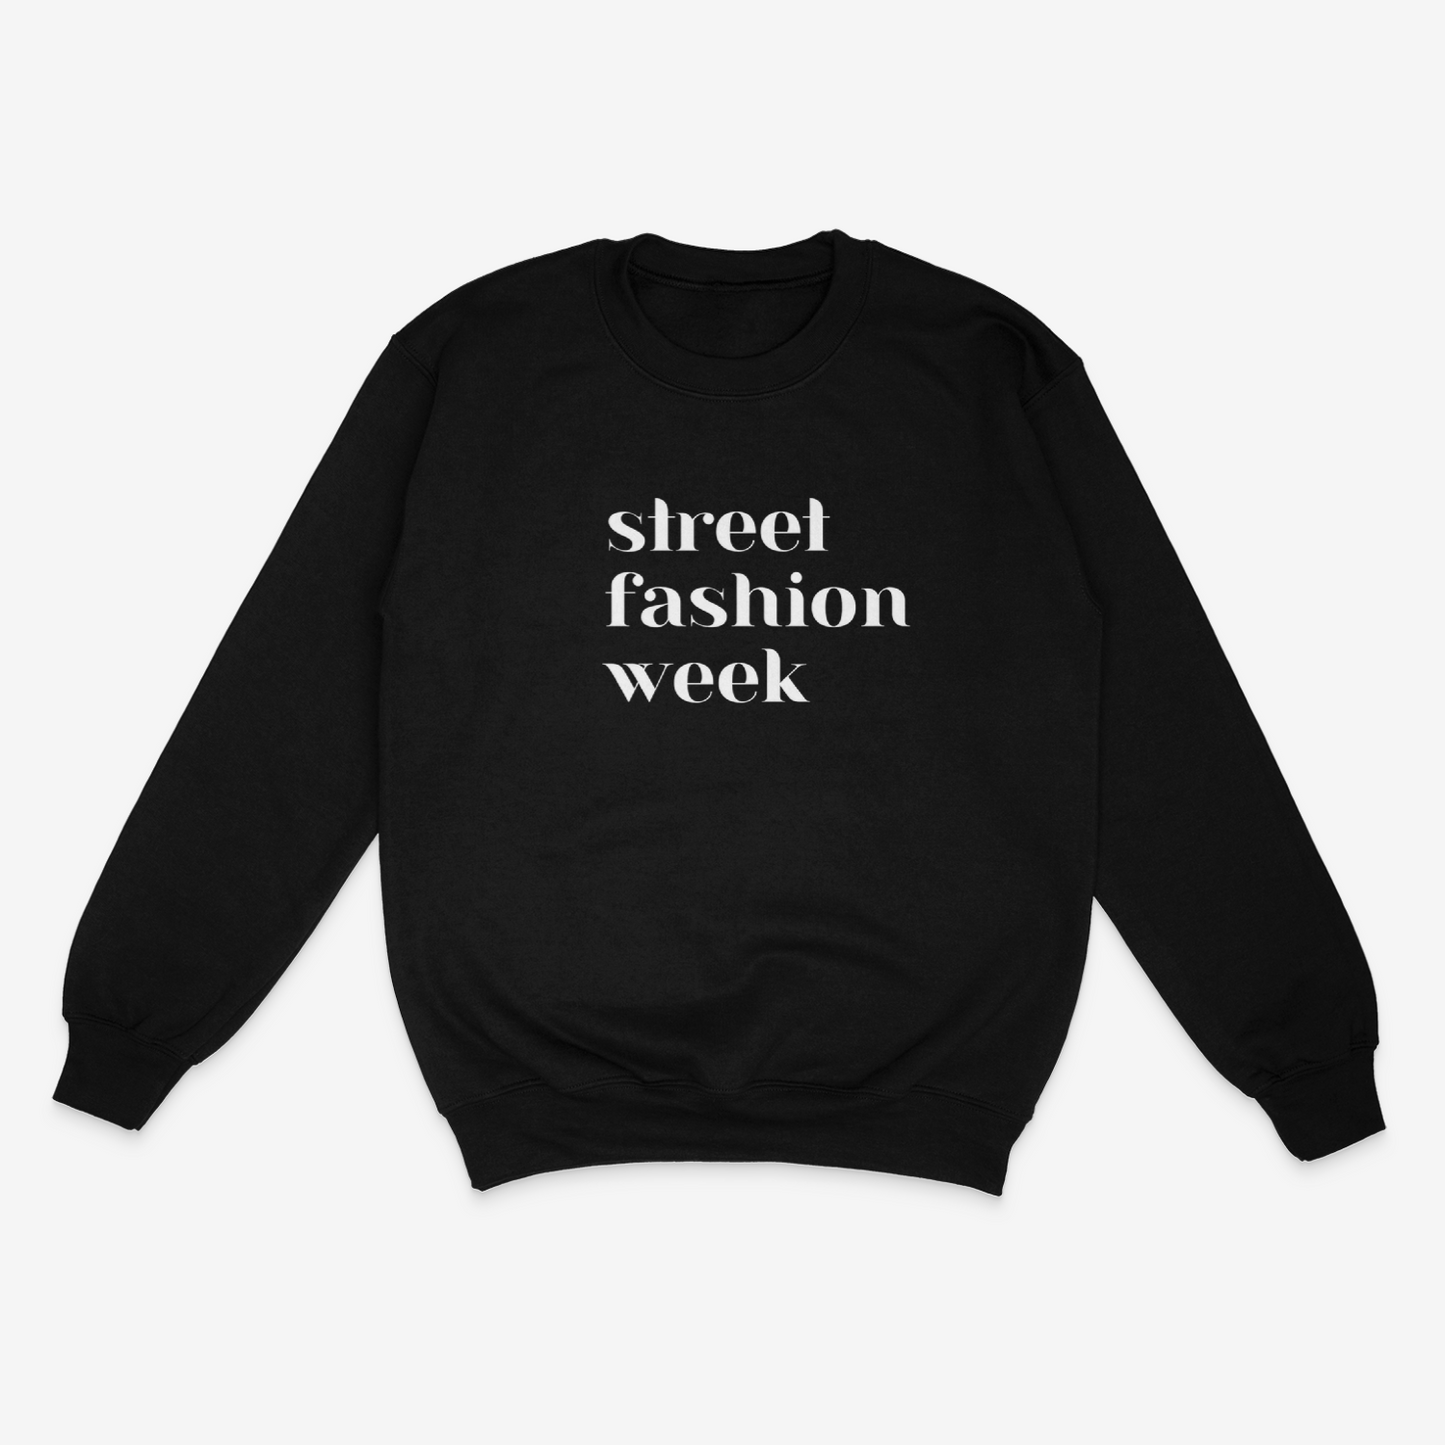 Street Fashion Week Sweatshirt